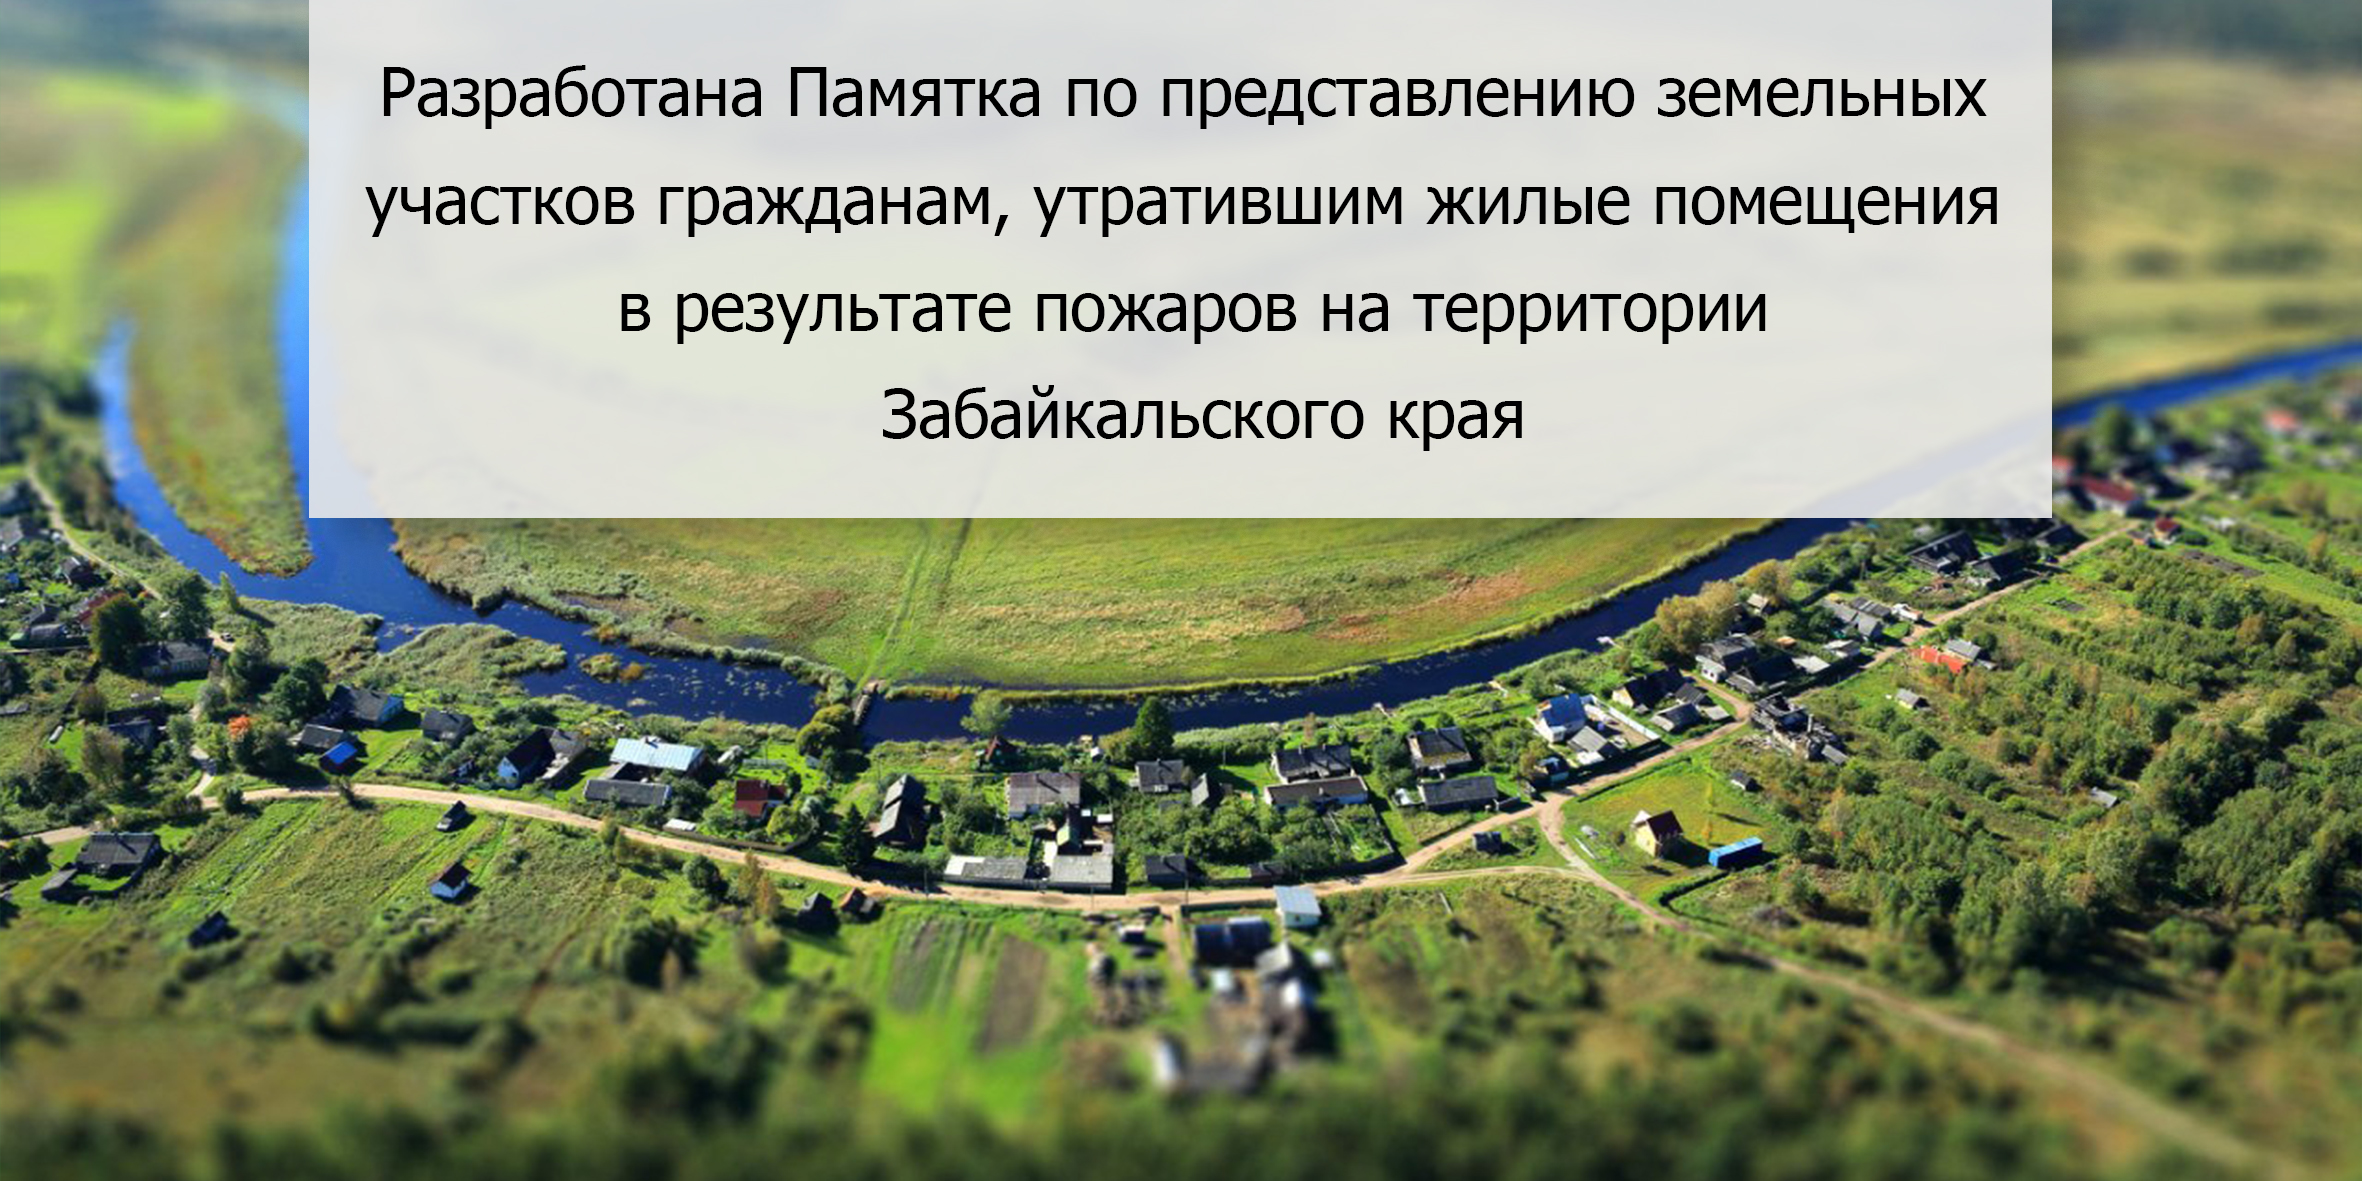 Департамент земельных отношений забайкальского